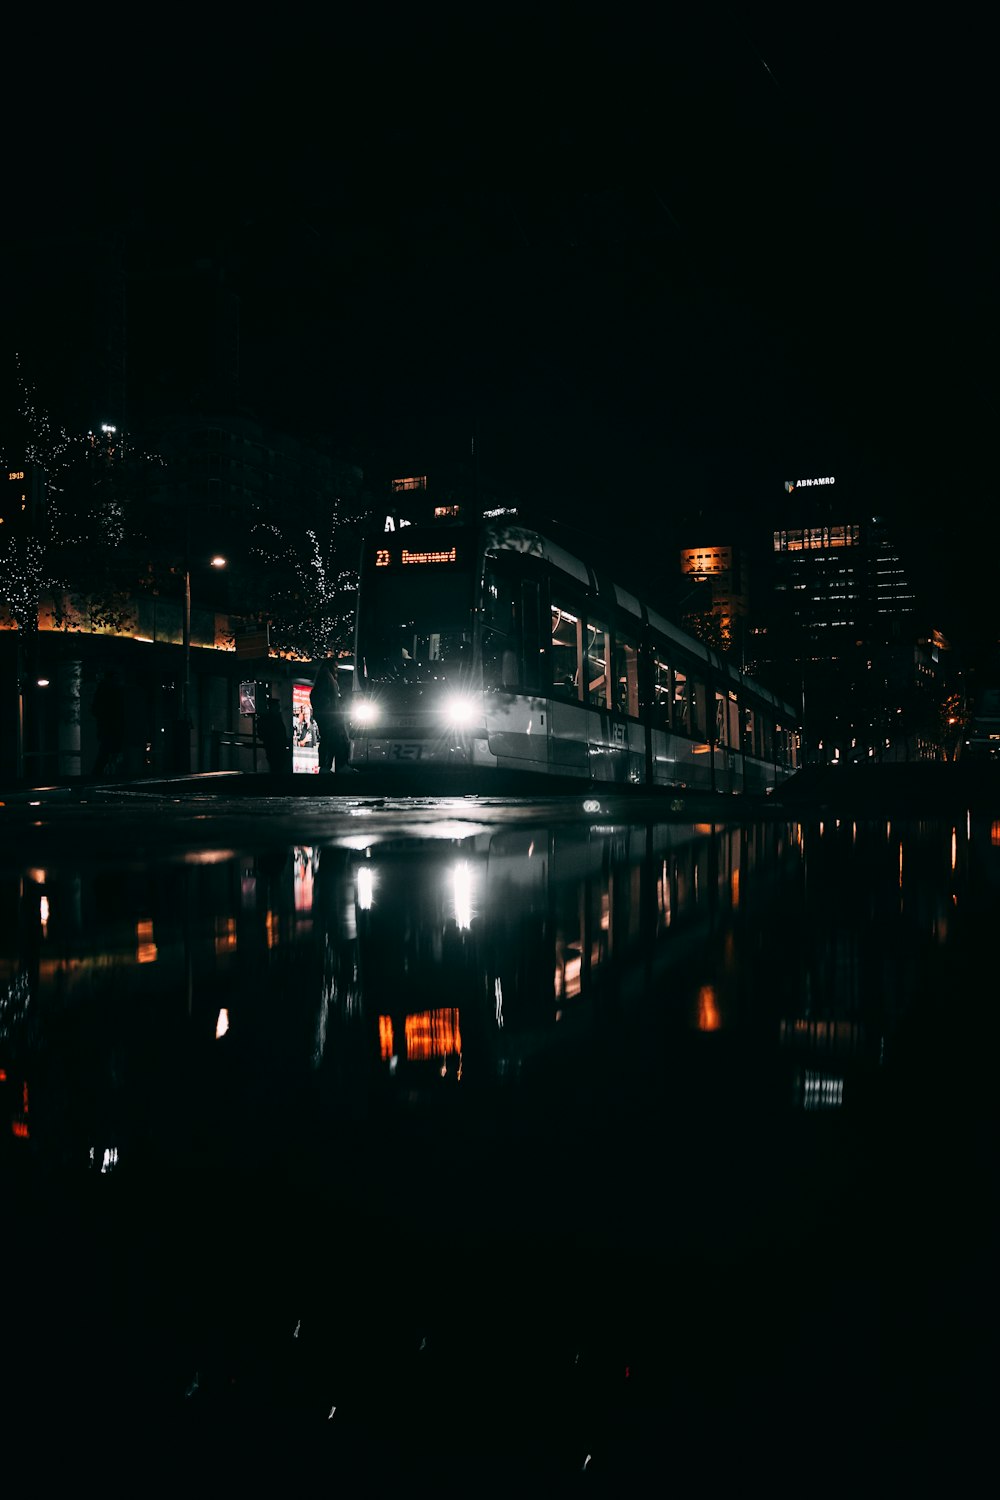 Gewässer in der Nähe von Gebäuden während der Nachtzeit